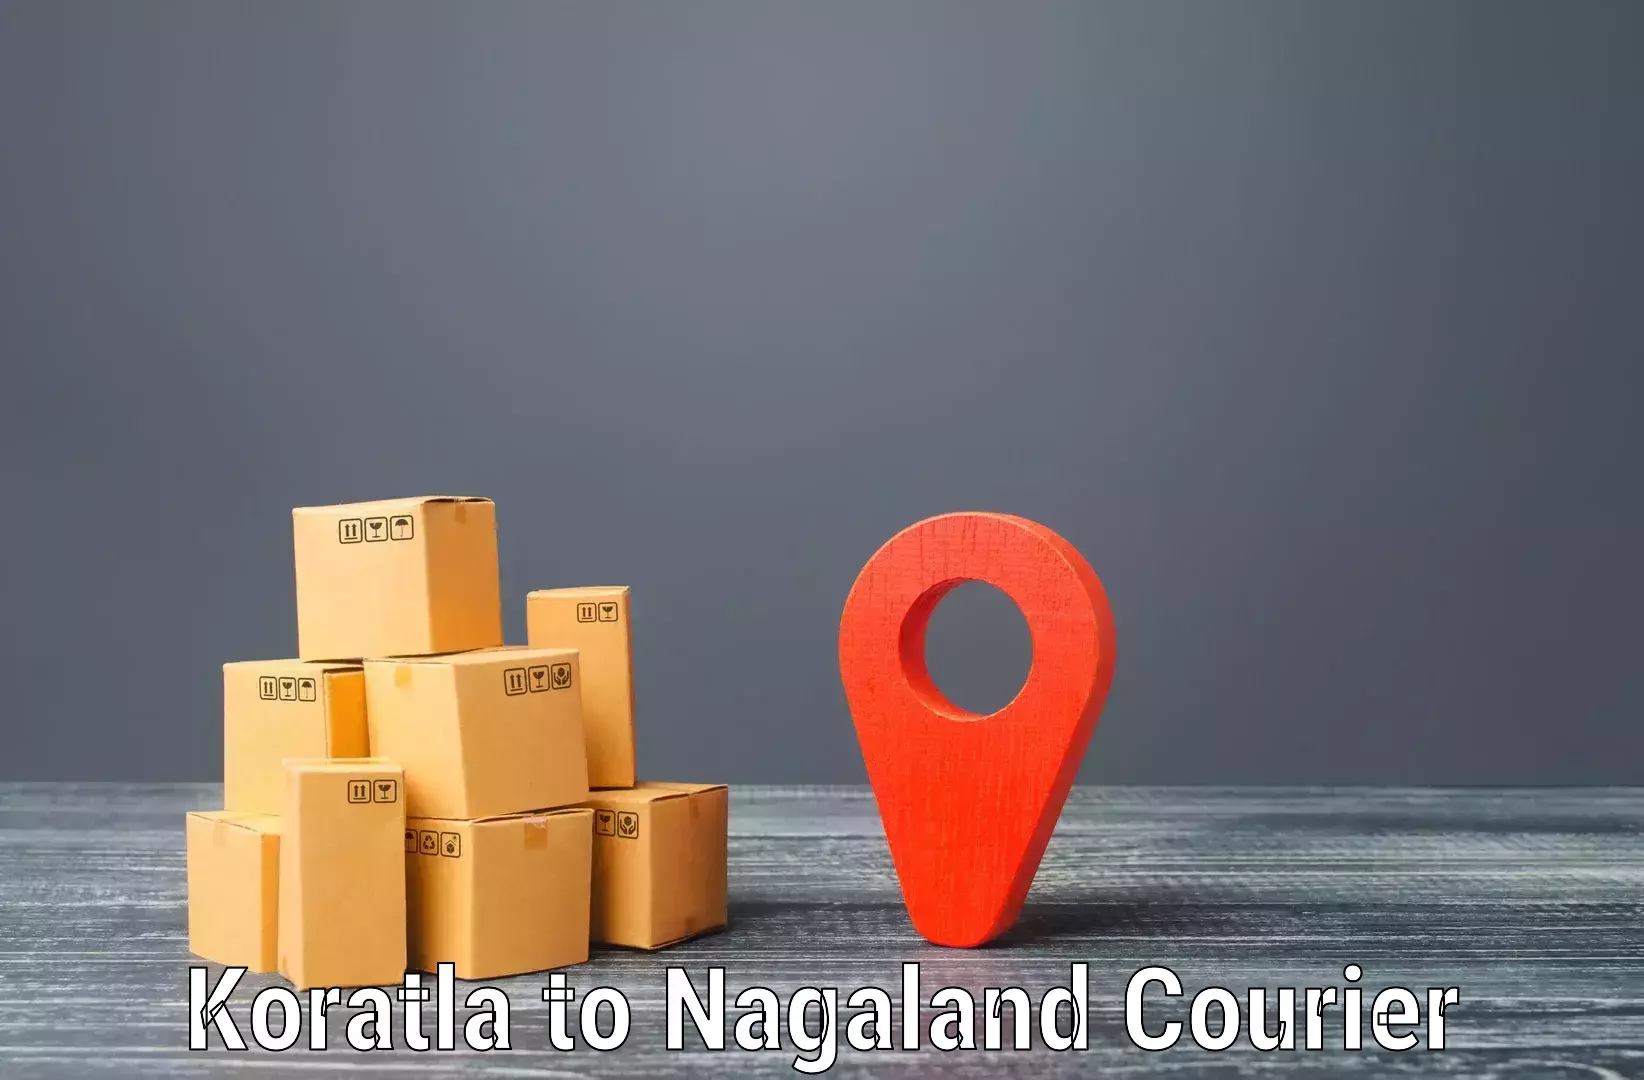 Nationwide courier service Koratla to NIT Nagaland